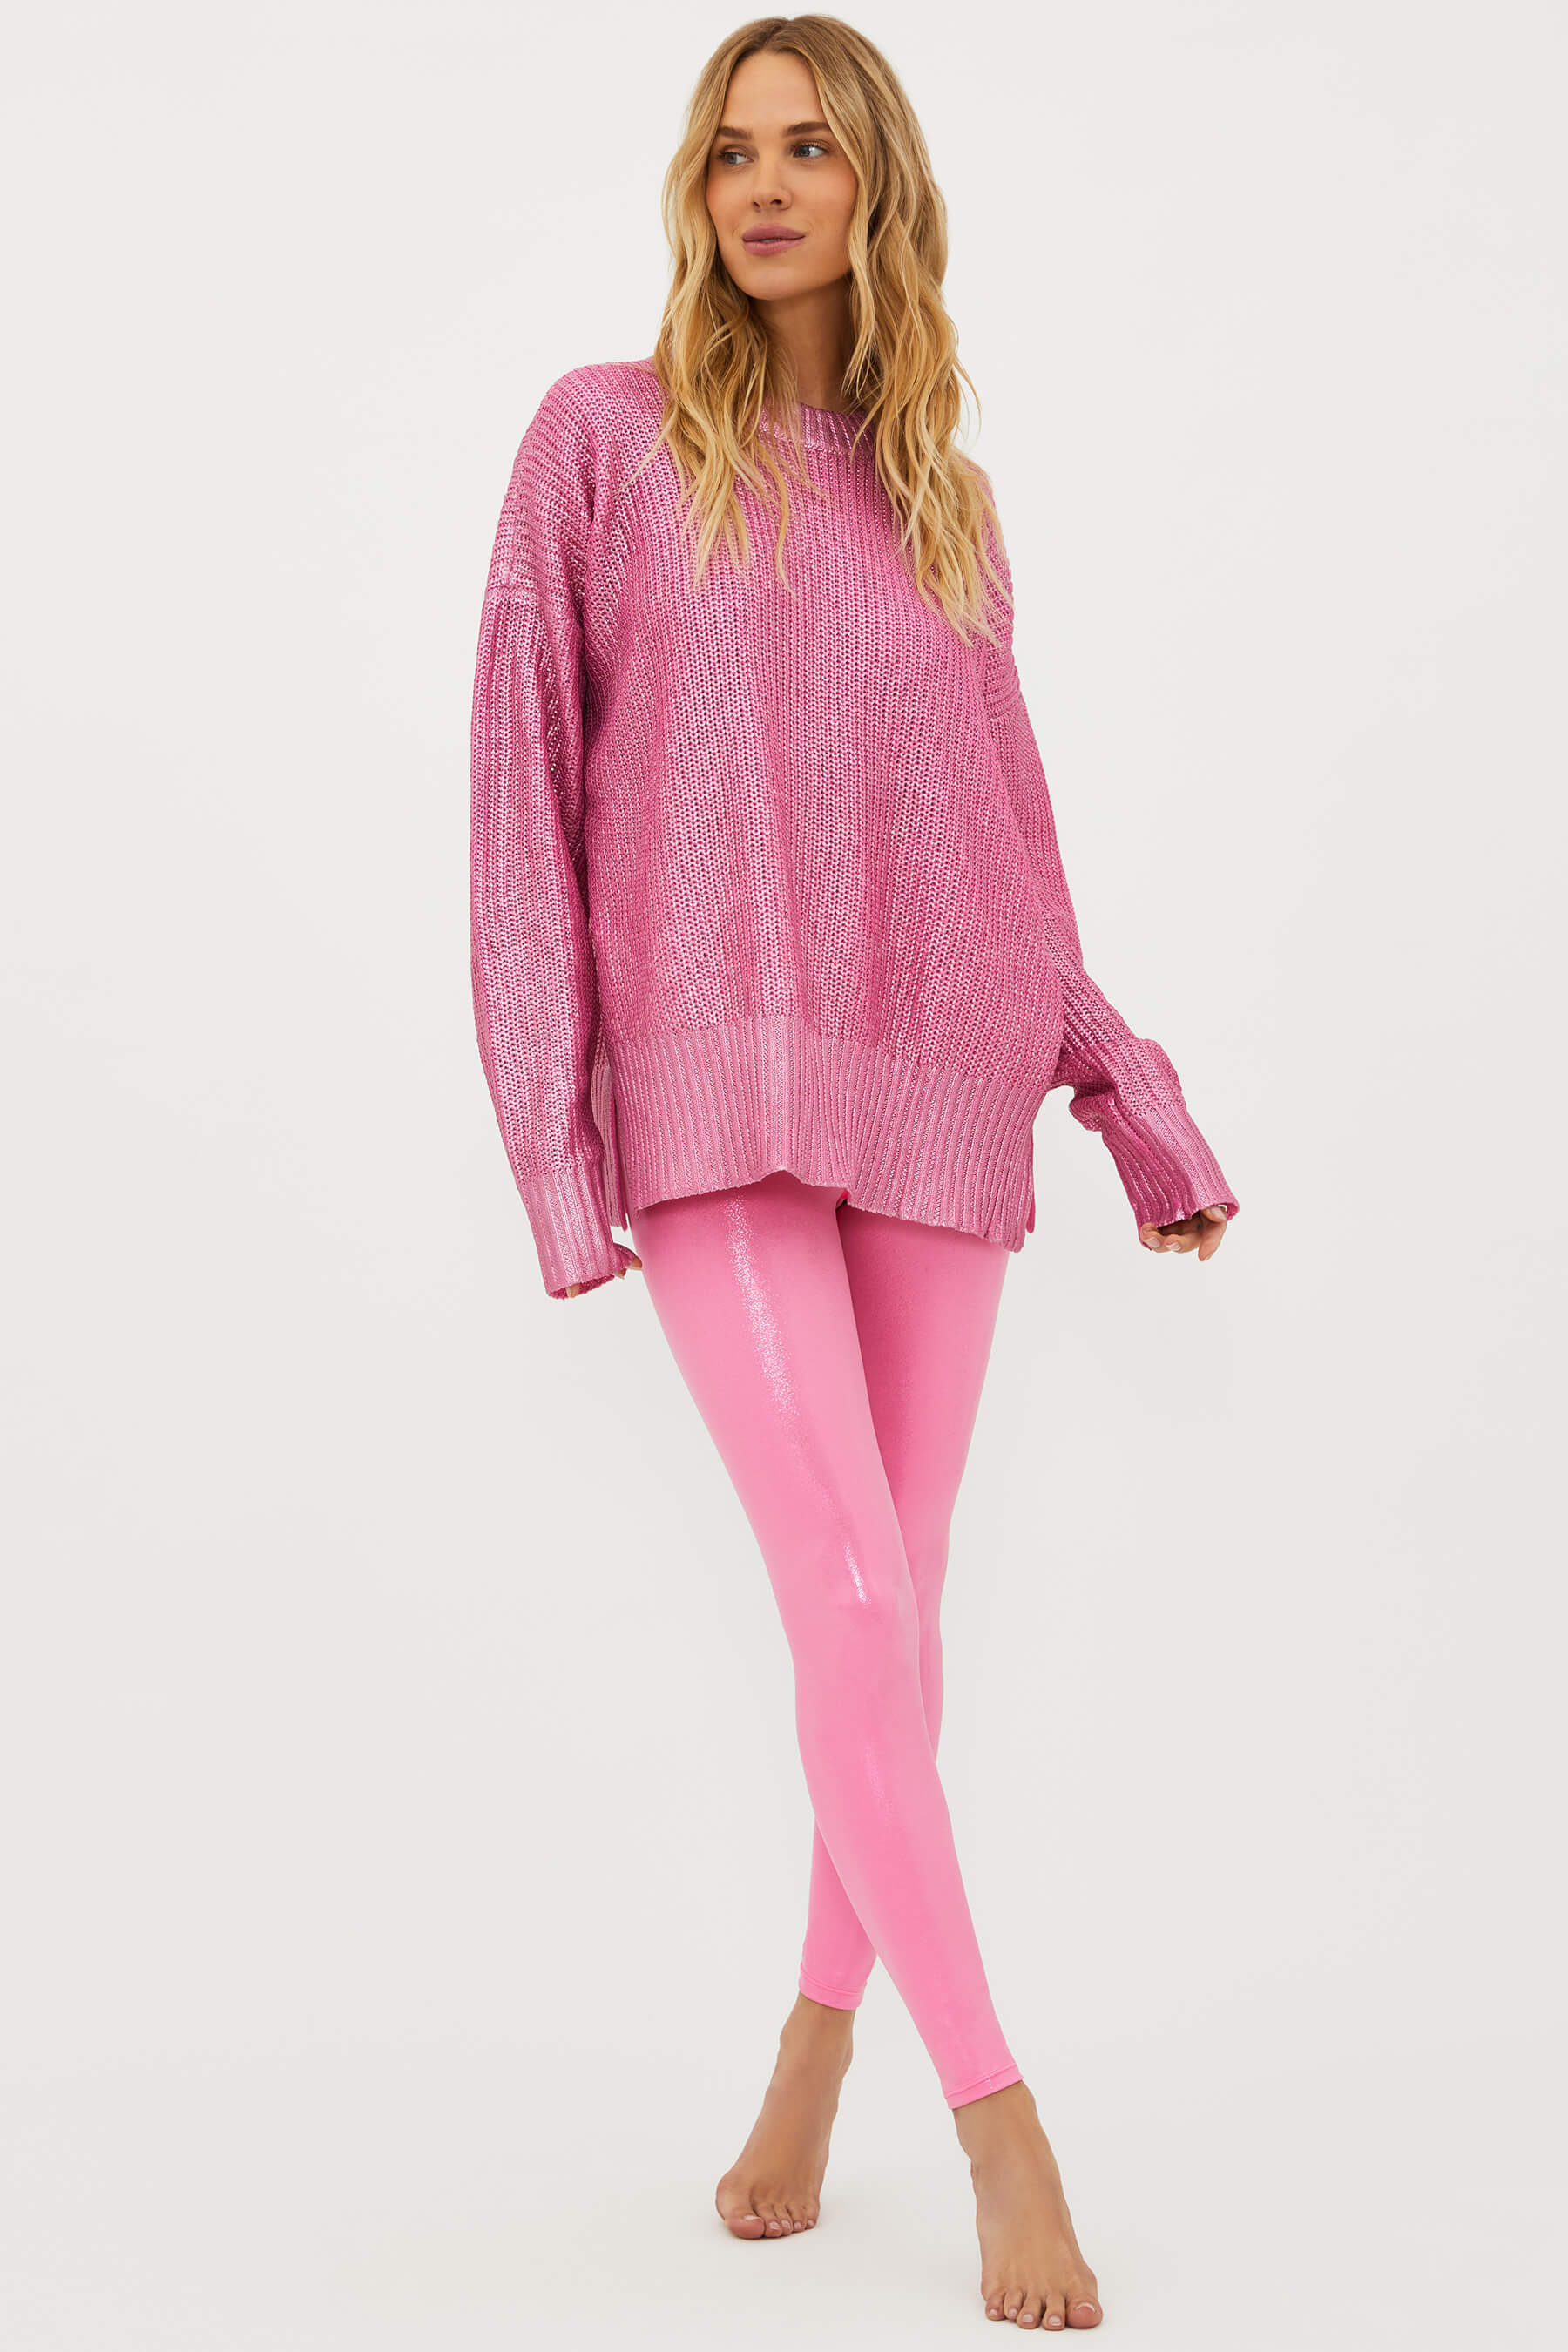 $118 Beach Riot Women's Pink Piper Leggings Pants Size XL